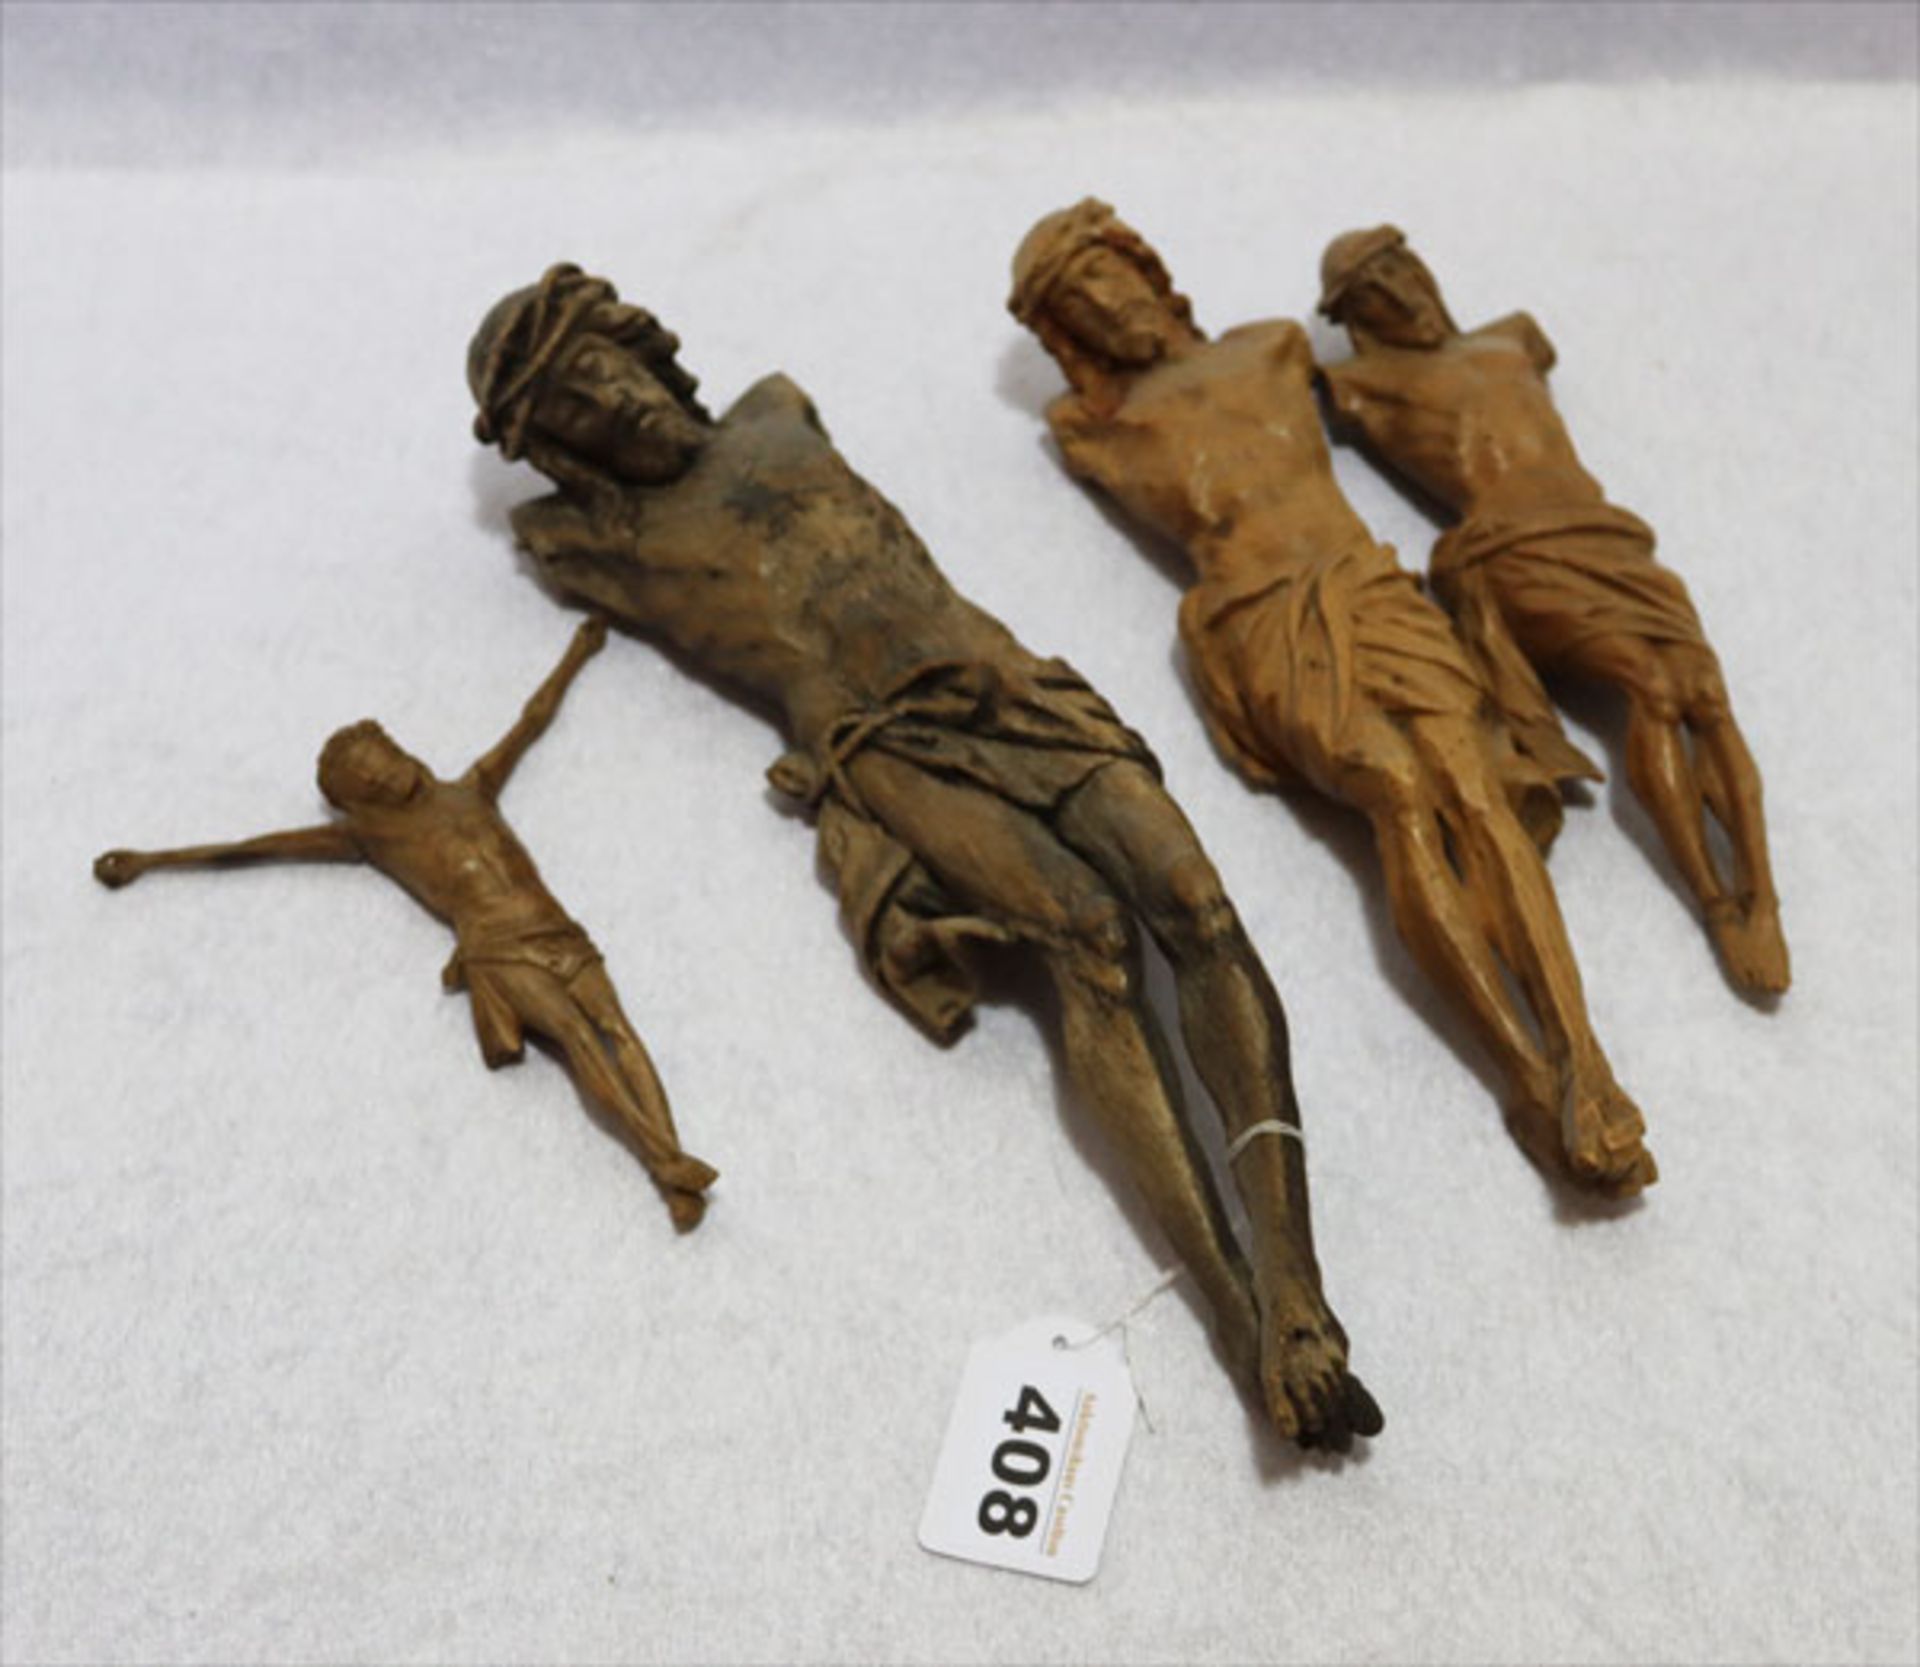 4 Holzfiguren 'Jesus', 3 davon ohne Arme, beschädigt, H 13/30 cm, Altersspuren